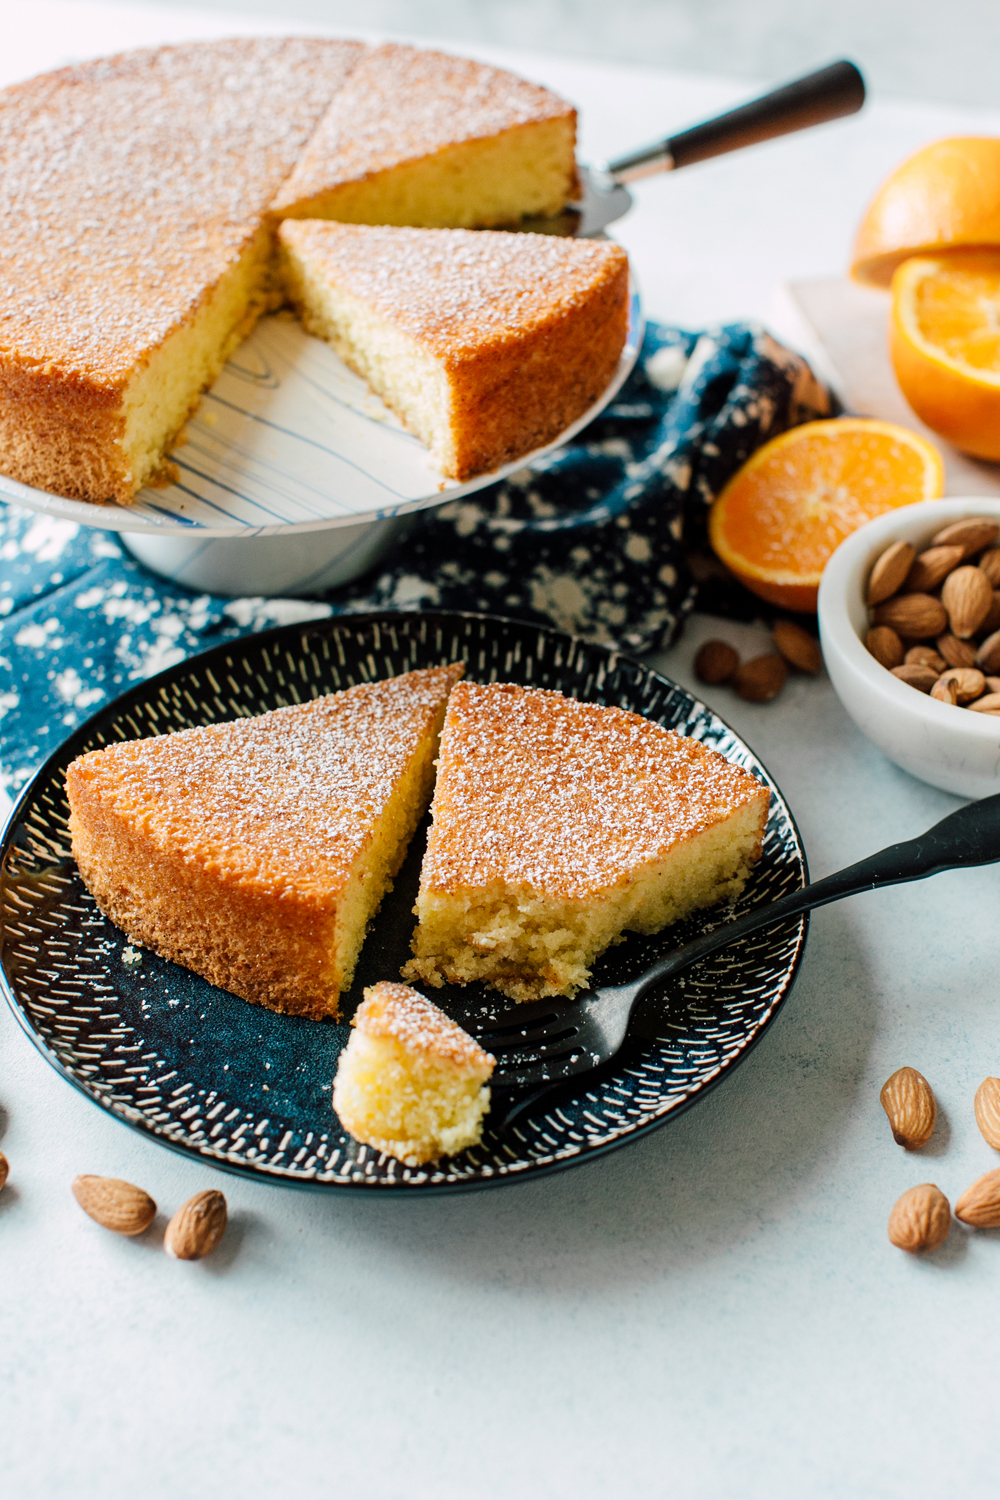 009-bellingham-food-photographer-katheryn-moran-orange-almond-cake.jpg